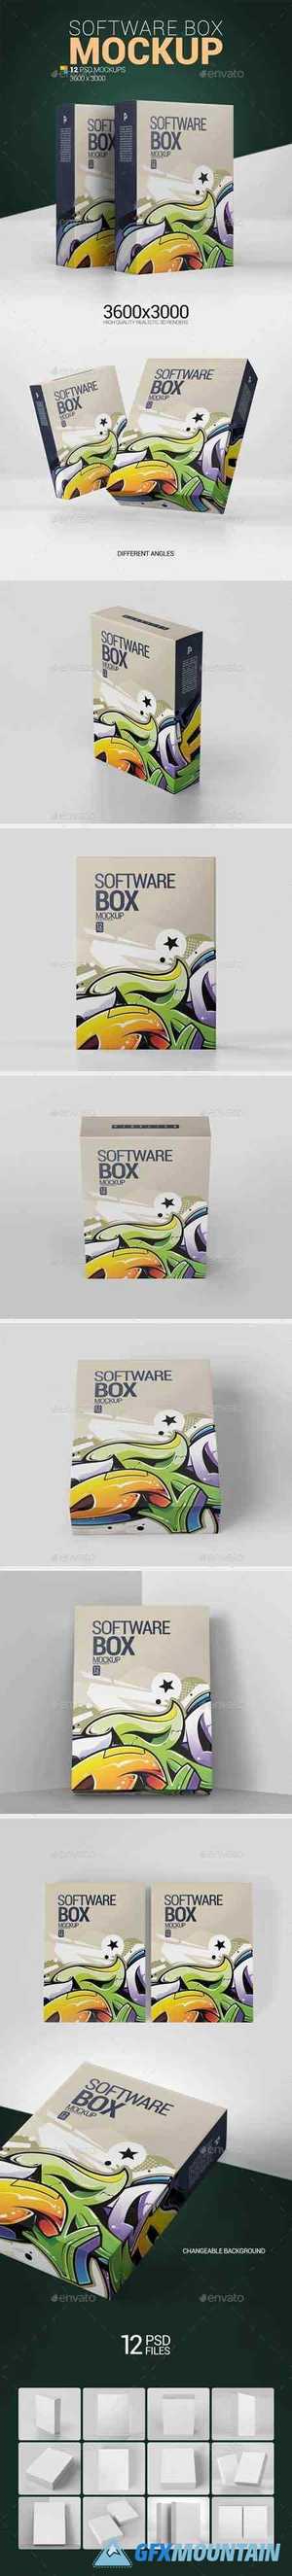 Software Box Mockup 25568629